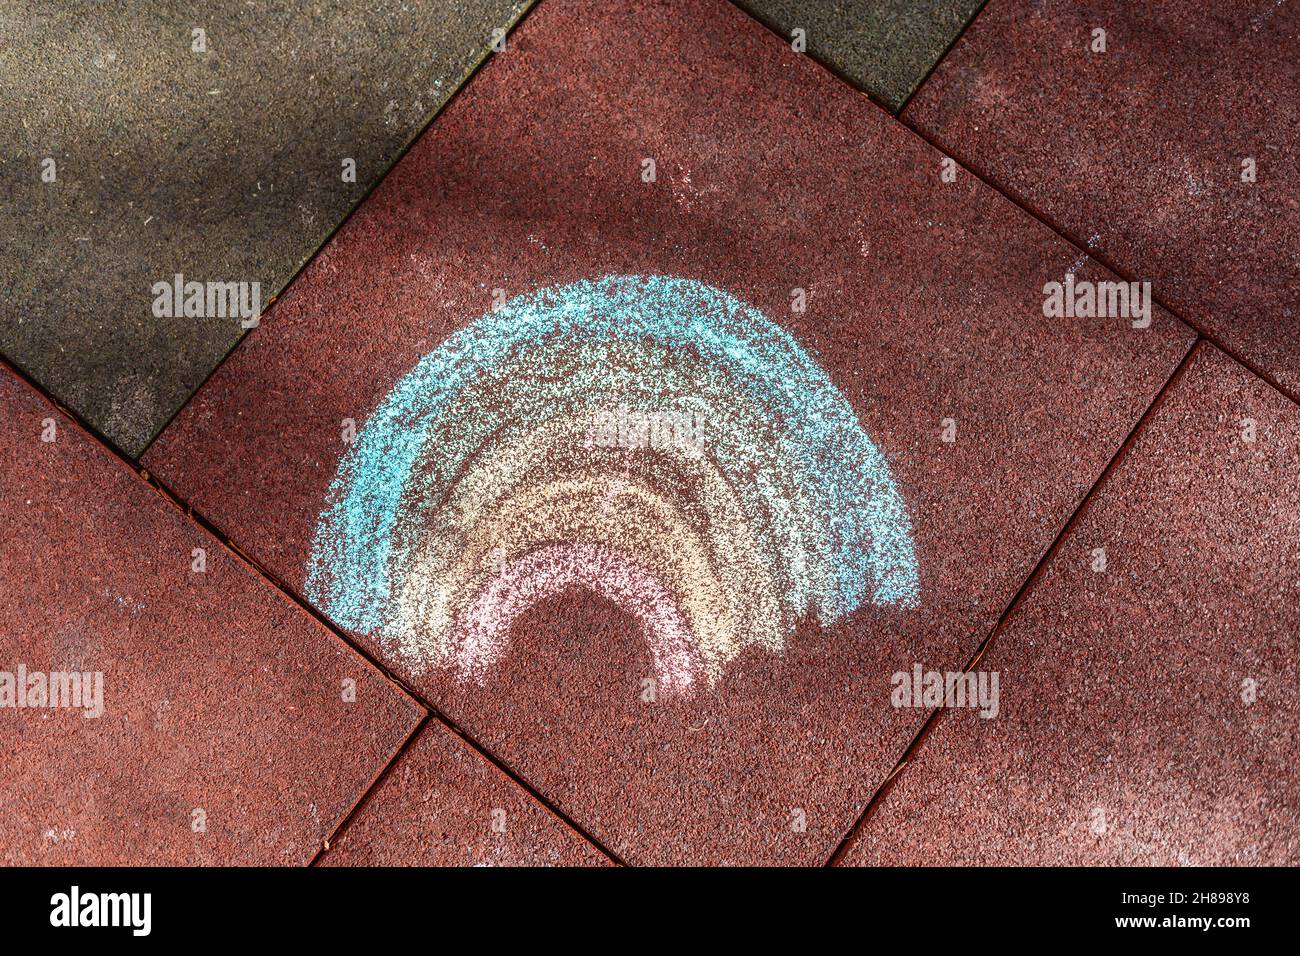 Eine Kinderzeichnung eines Regenbogens, gezeichnet mit Buntstiften. Flach liegend. Konzept des Friedens. Stockfoto